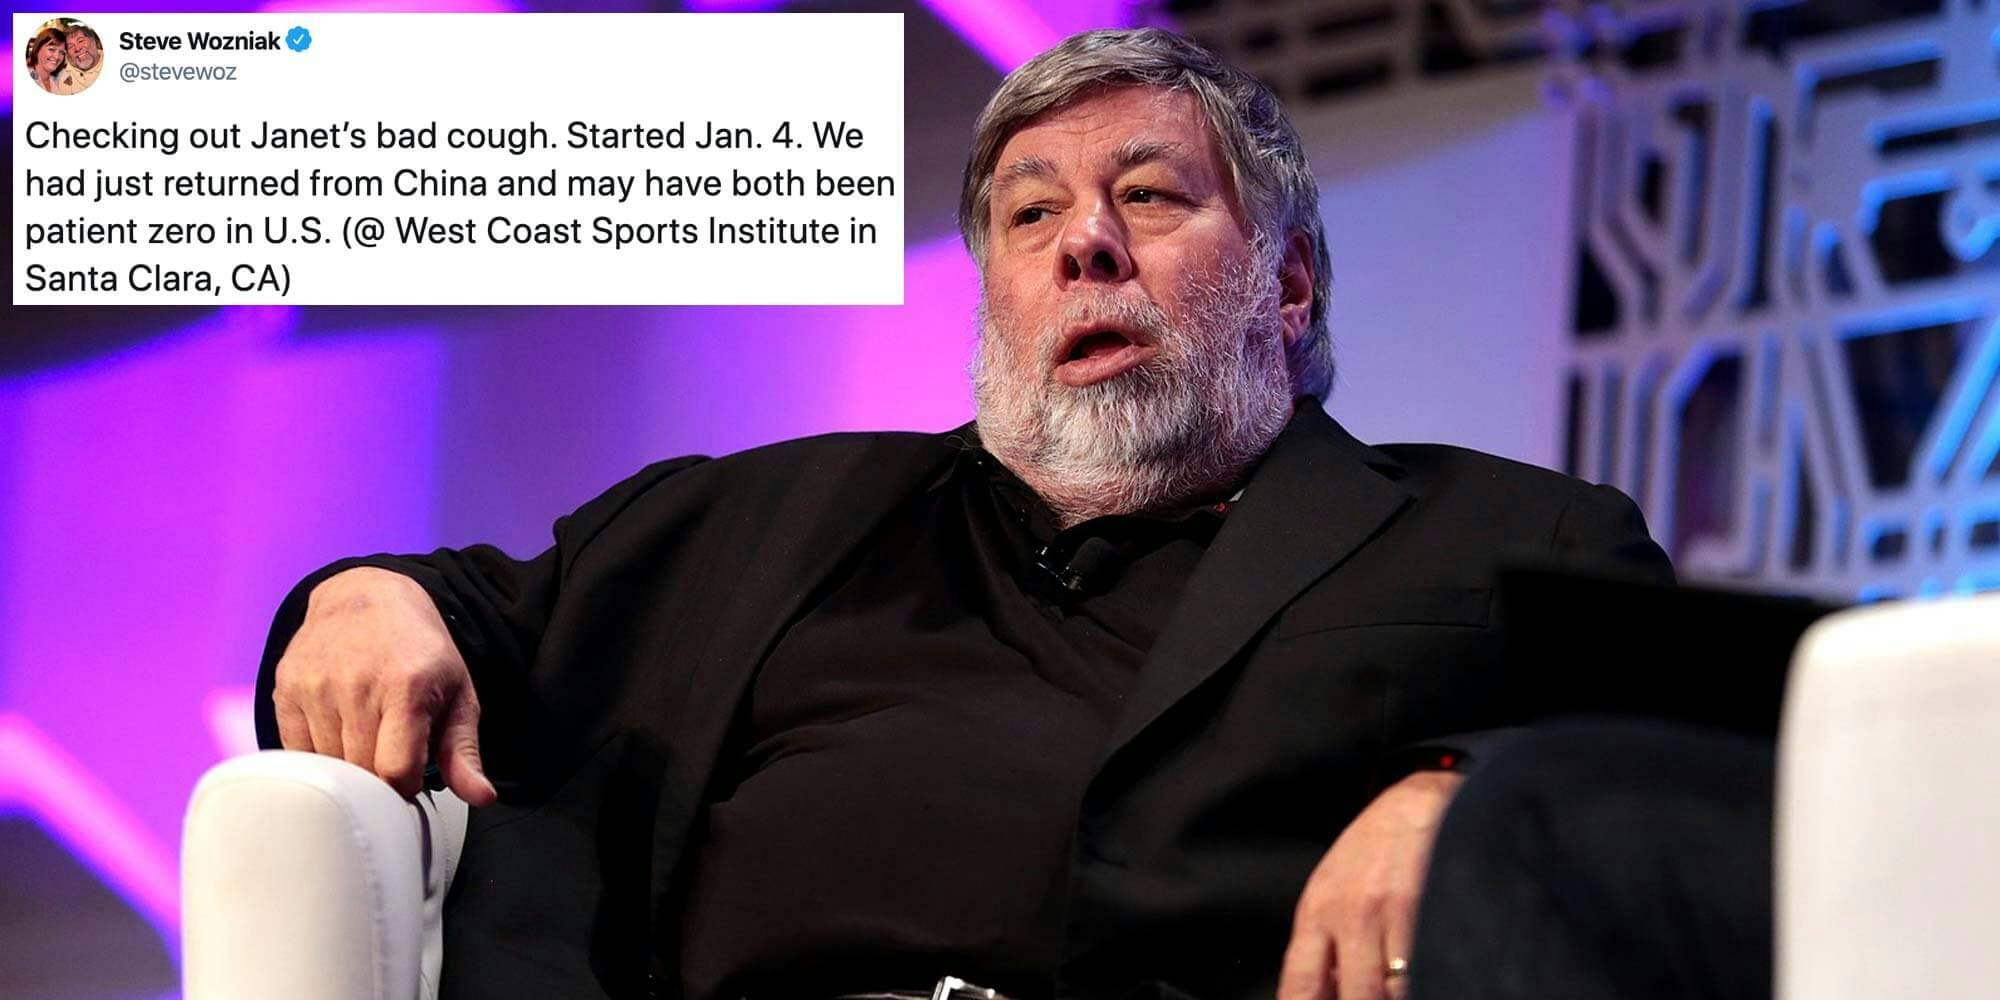 Apple co-founder Steve Wozniak